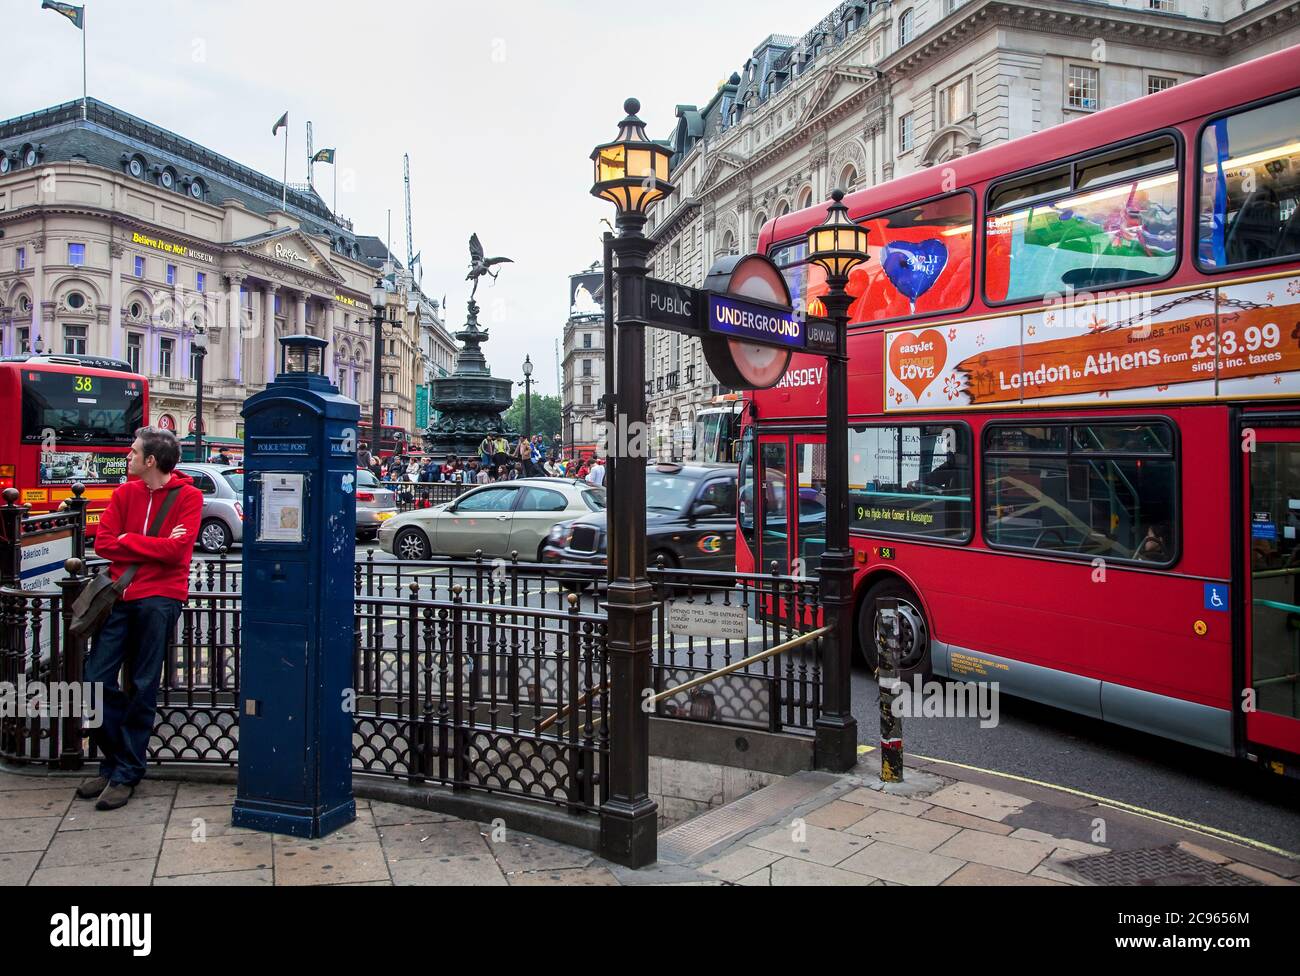 Londra, Gran Bretagna - Piccadilly Circus. Scena di strada all'ingresso della metropolitana. | Londra, Grossbritannien - Piccadilly Circus. Strassensze Foto Stock